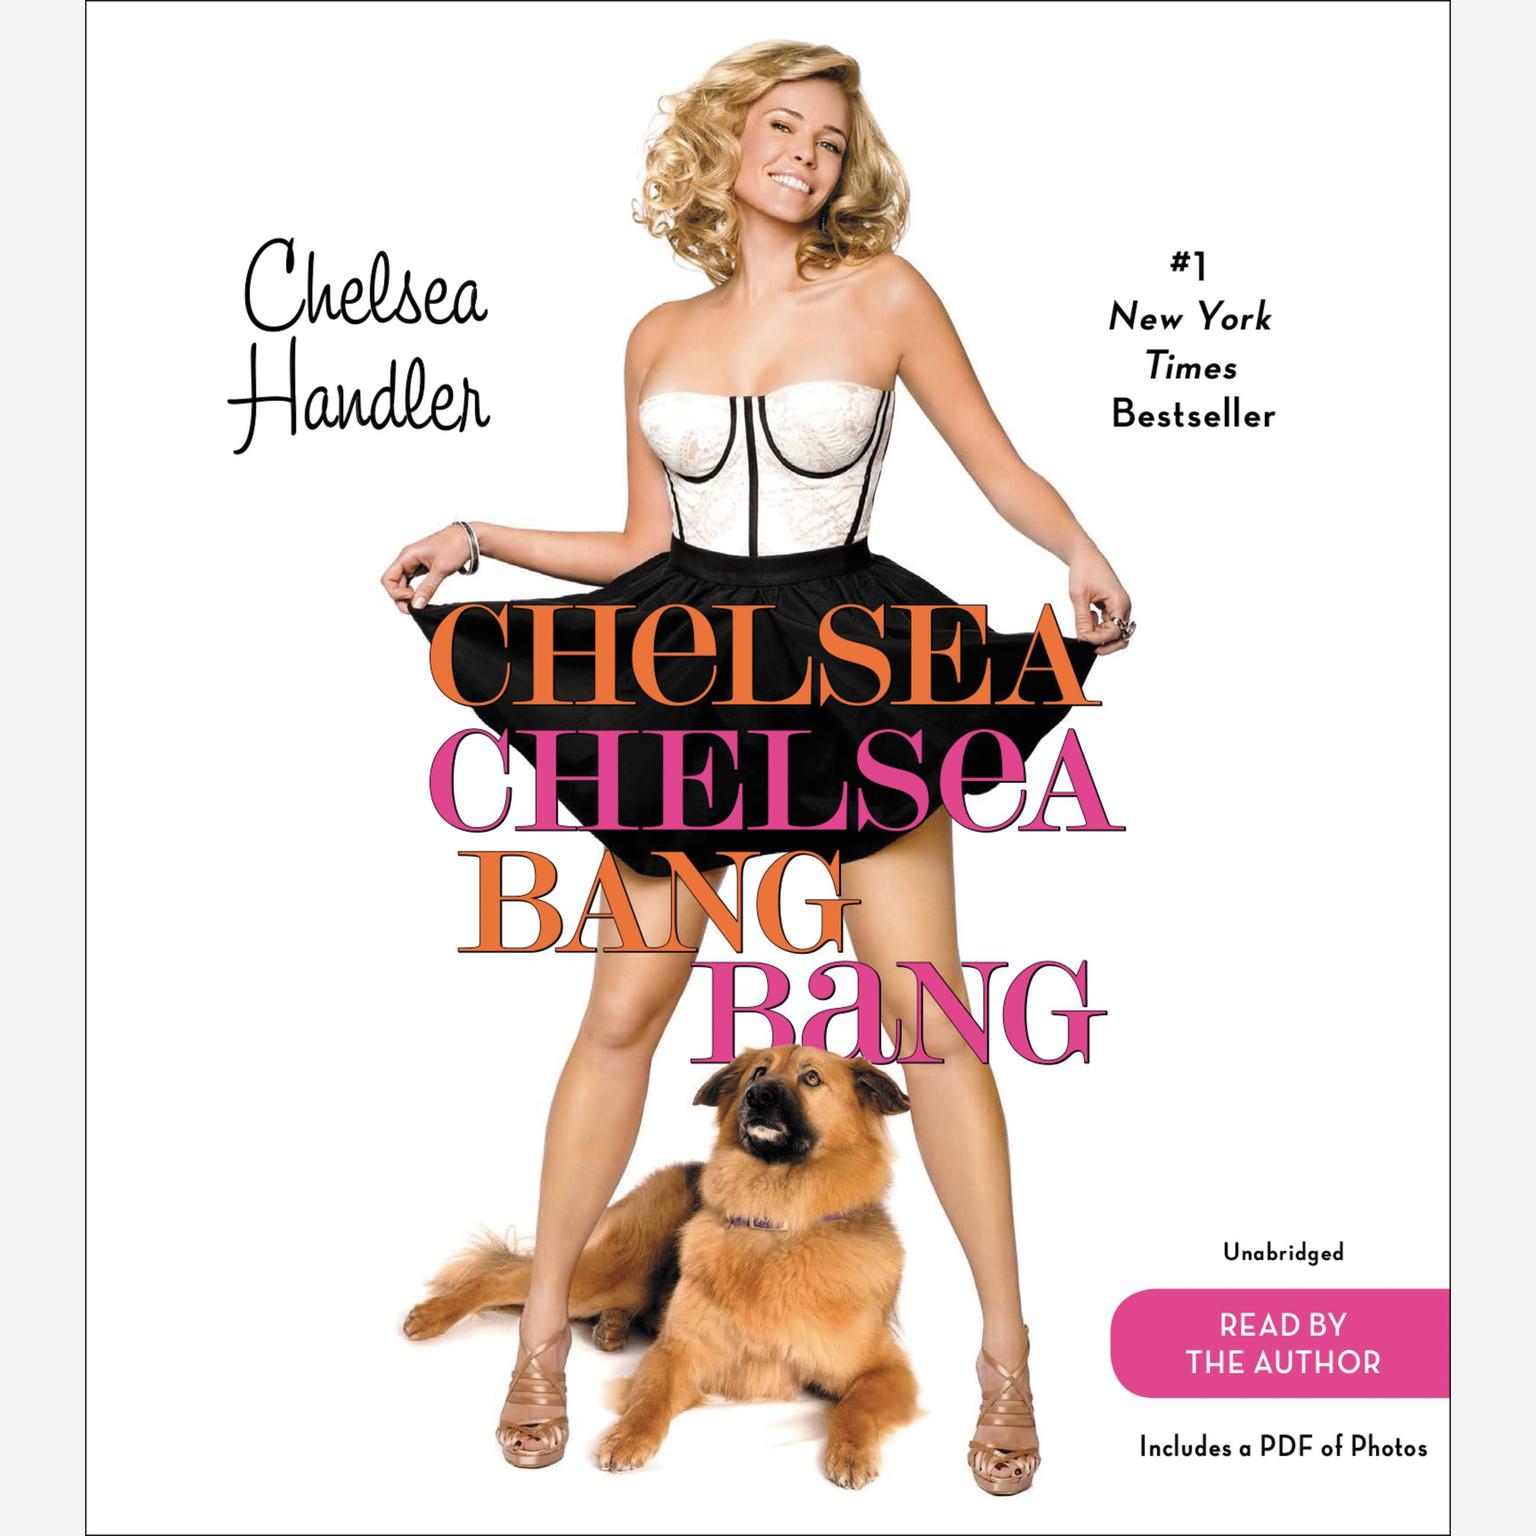 Chelsea Chelsea Bang Bang Audiobook, by Chelsea Handler